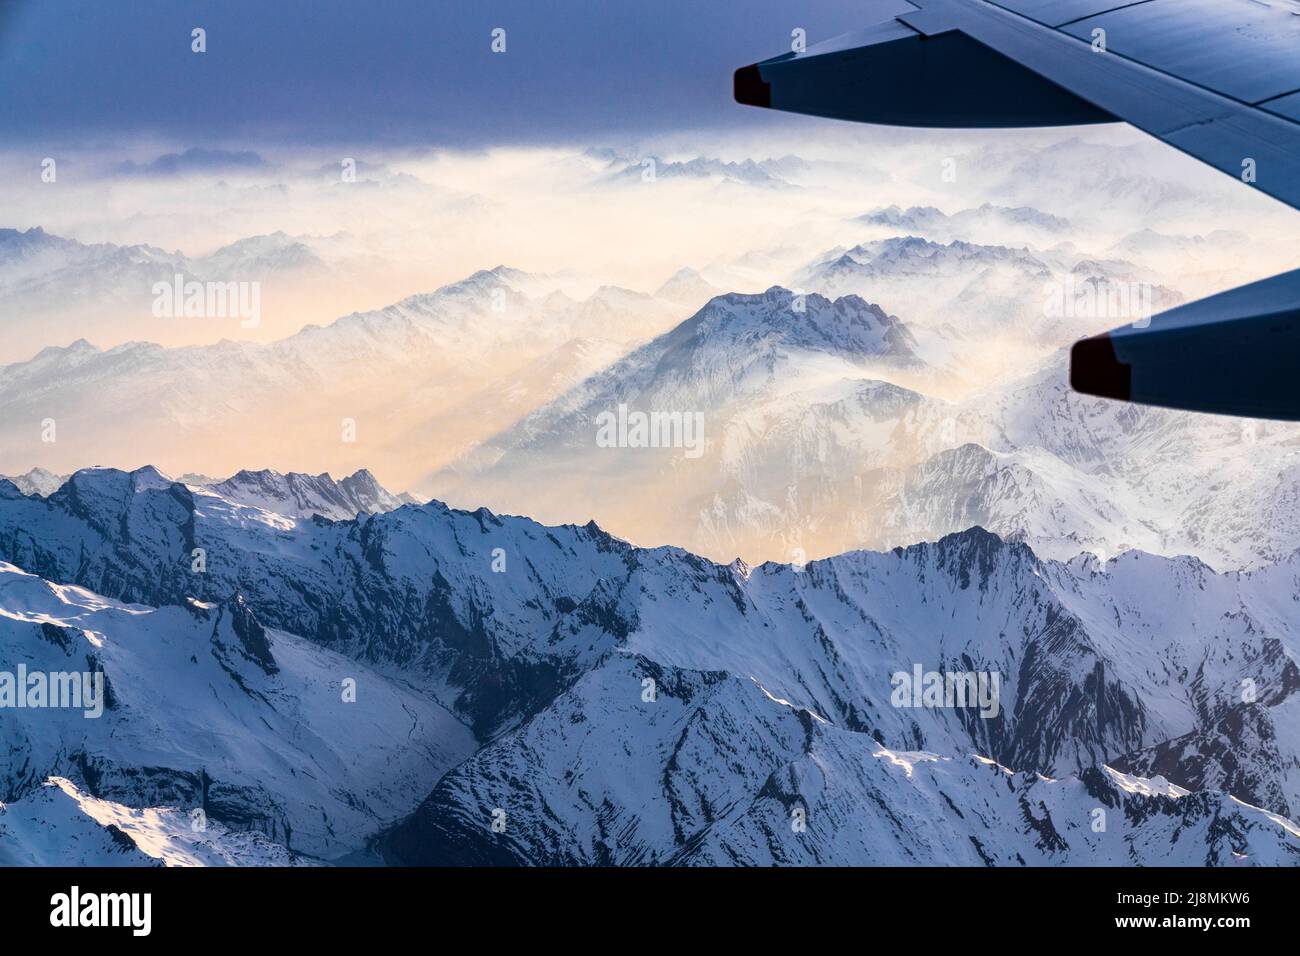 Avión volando sobre Lepontine y los Alpes Ticino cubiertos de nieve durante una puesta de sol foggy, cantón de Graubunden, Suiza Foto de stock